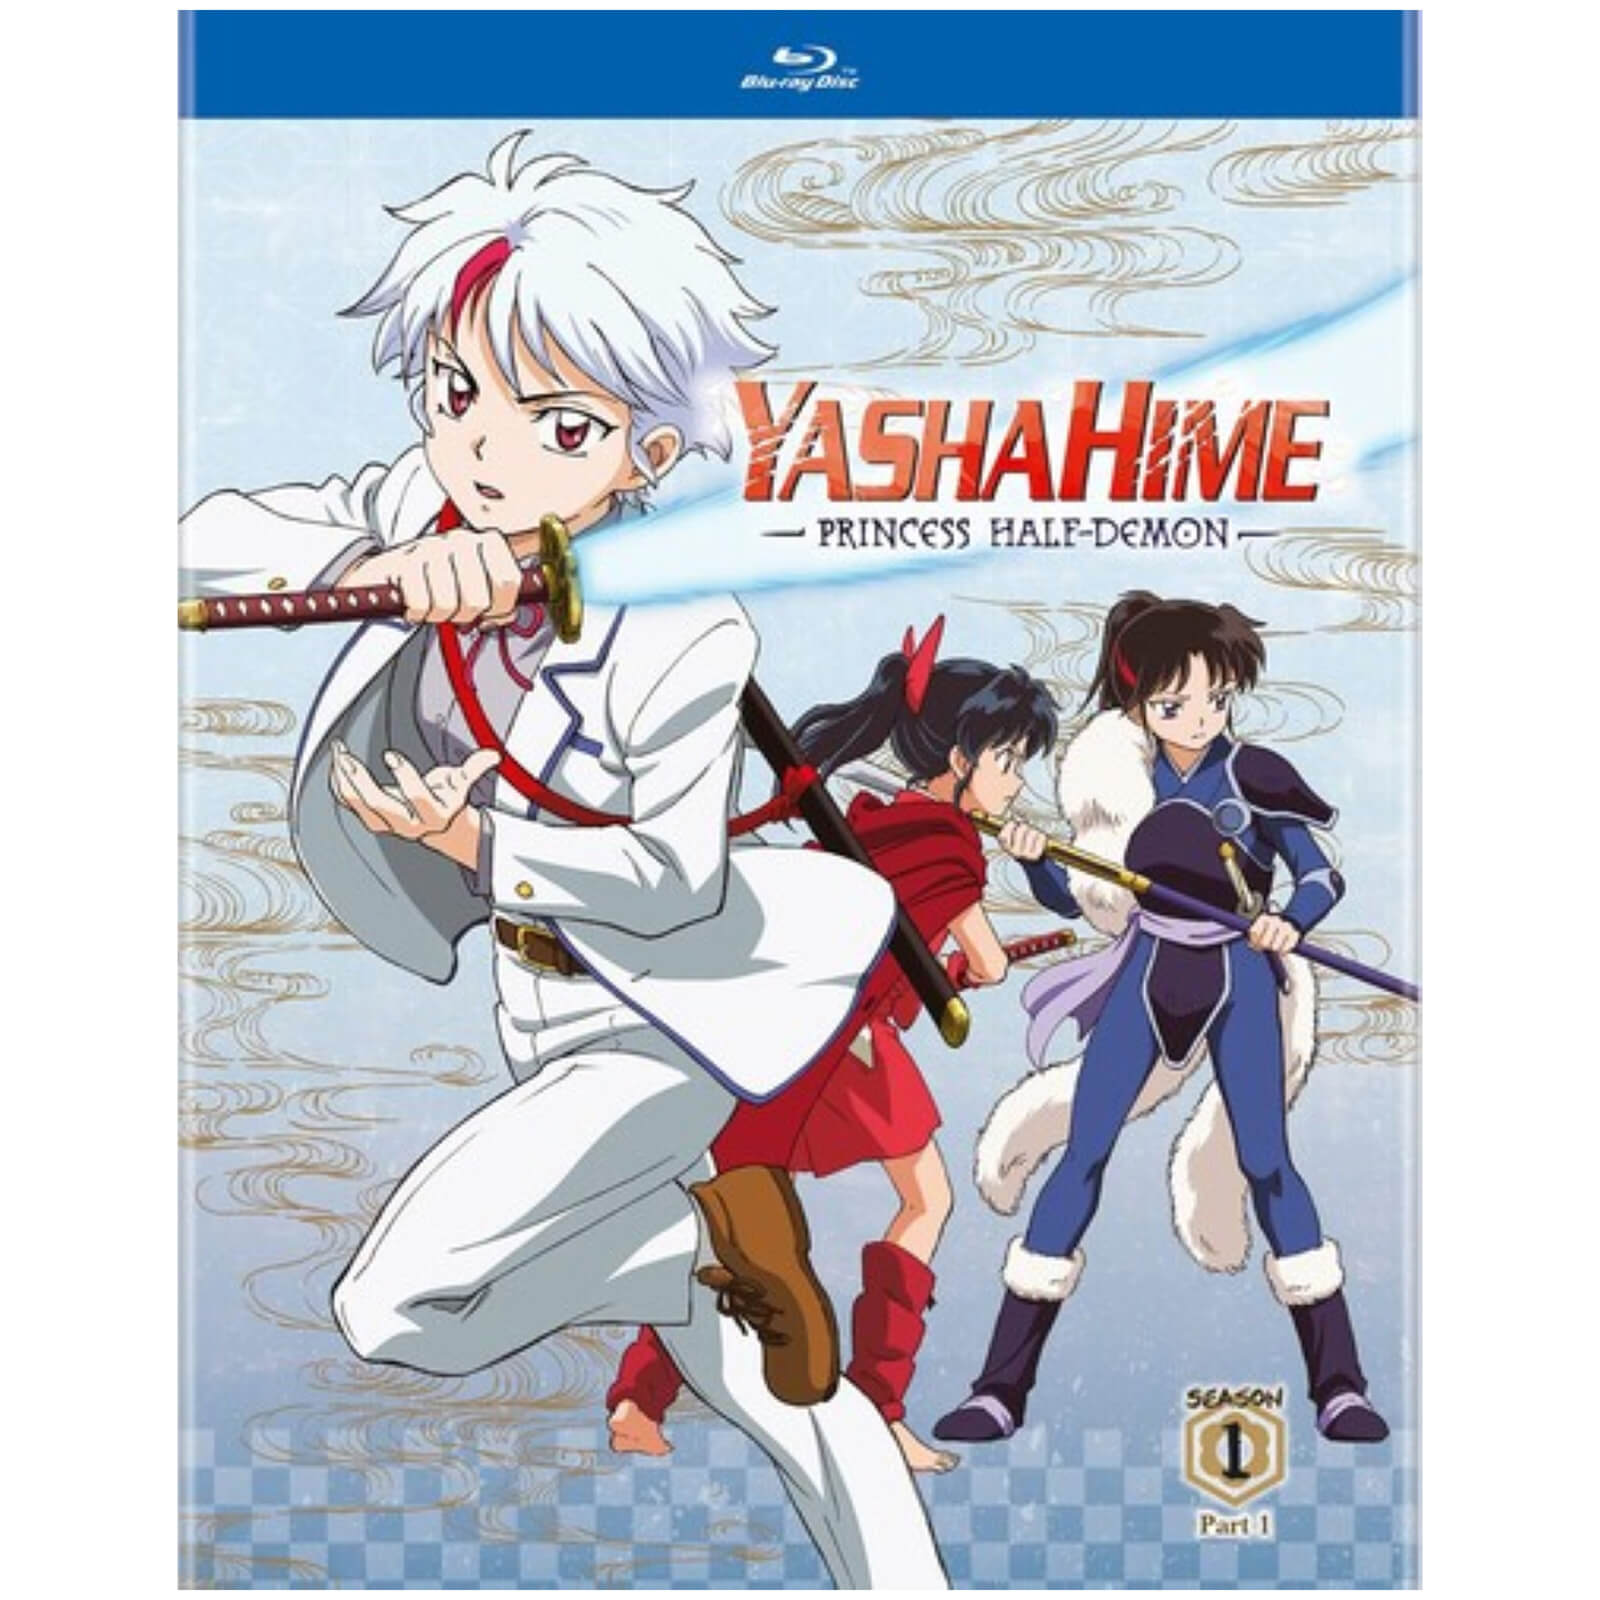 Yashahime: Princess Half-Demon: Season 1 Part 1 (US Import) von Viz Media